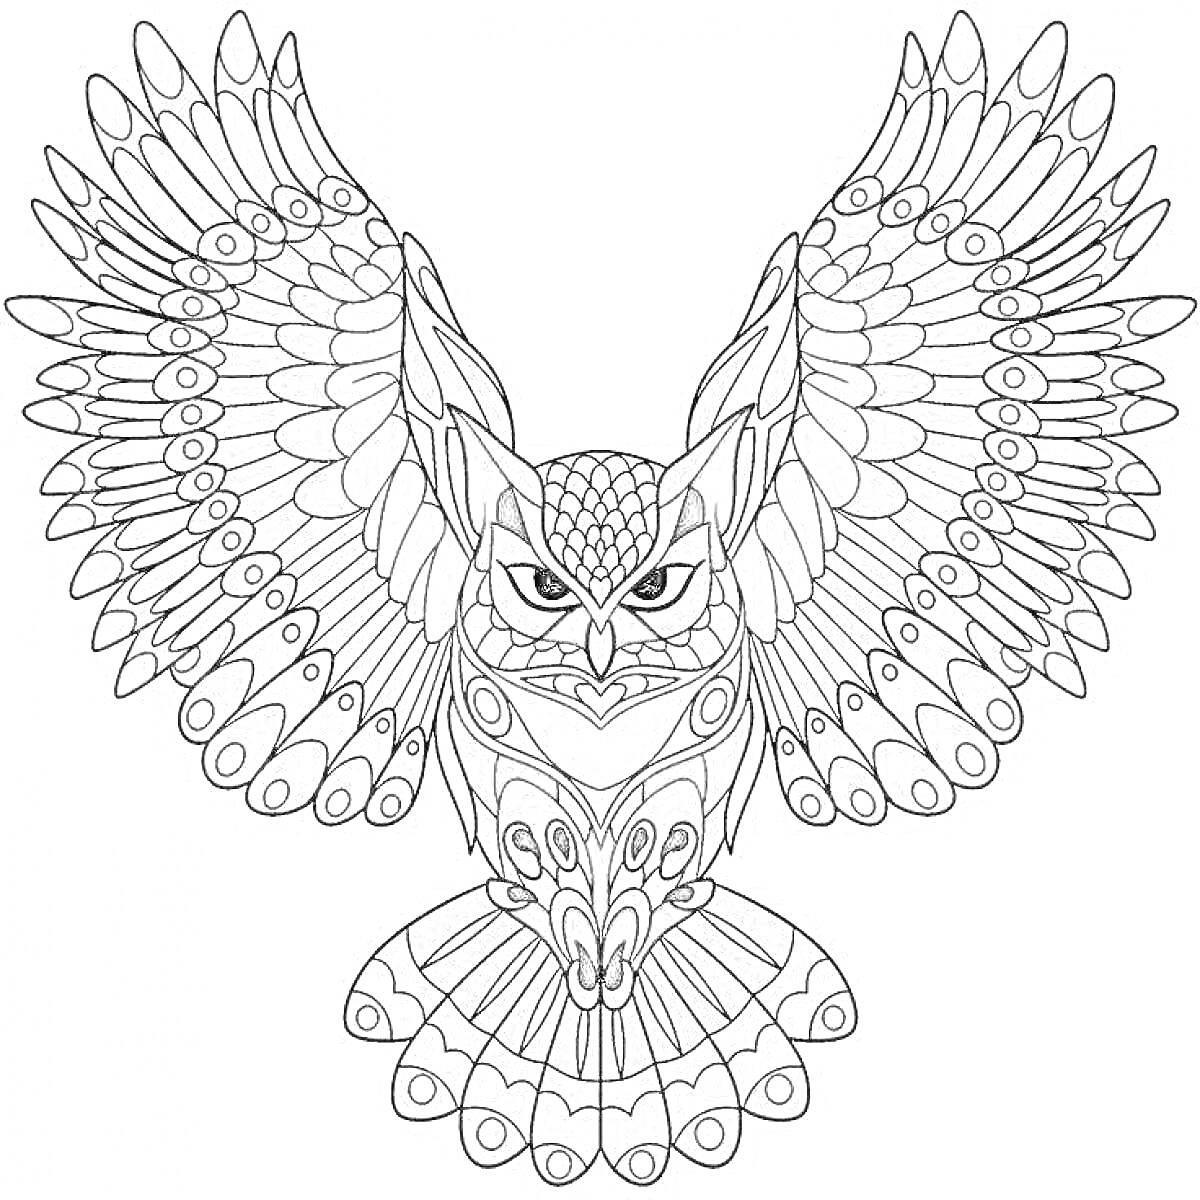 Раскраска Сова с расправленными крыльями, многочисленные детали на крыльях и хвосте